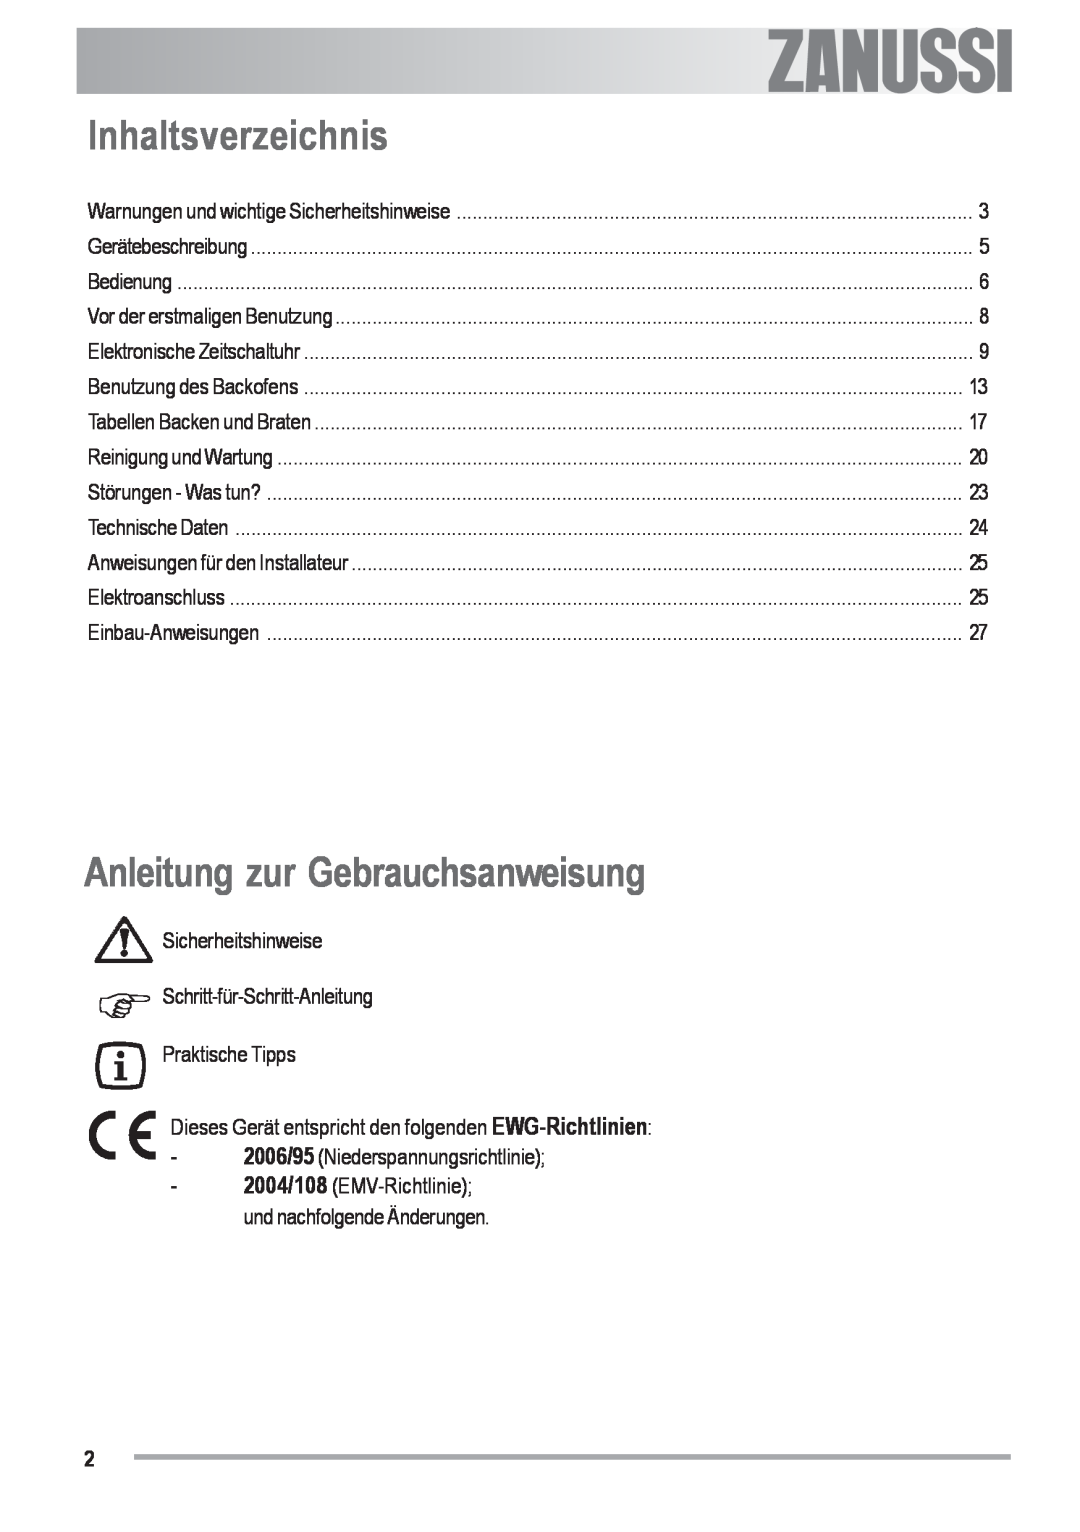 Zanussi ZOU 482 Inhaltsverzeichnis, Anleitung zur Gebrauchsanweisung, Electrolux, 2006/95 Niederspannungsrichtlinie 